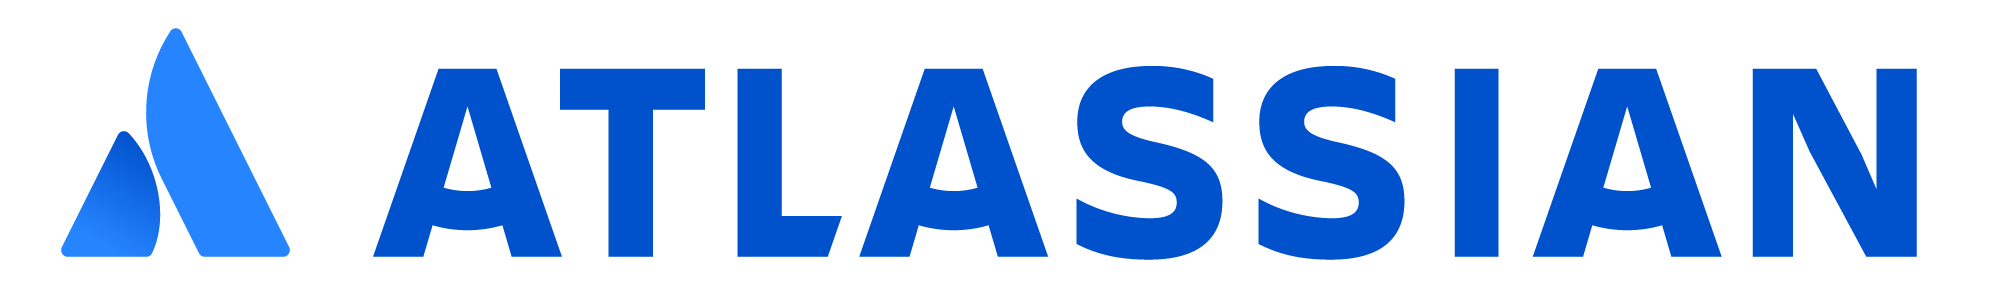 Atlassian sponsorship for studies